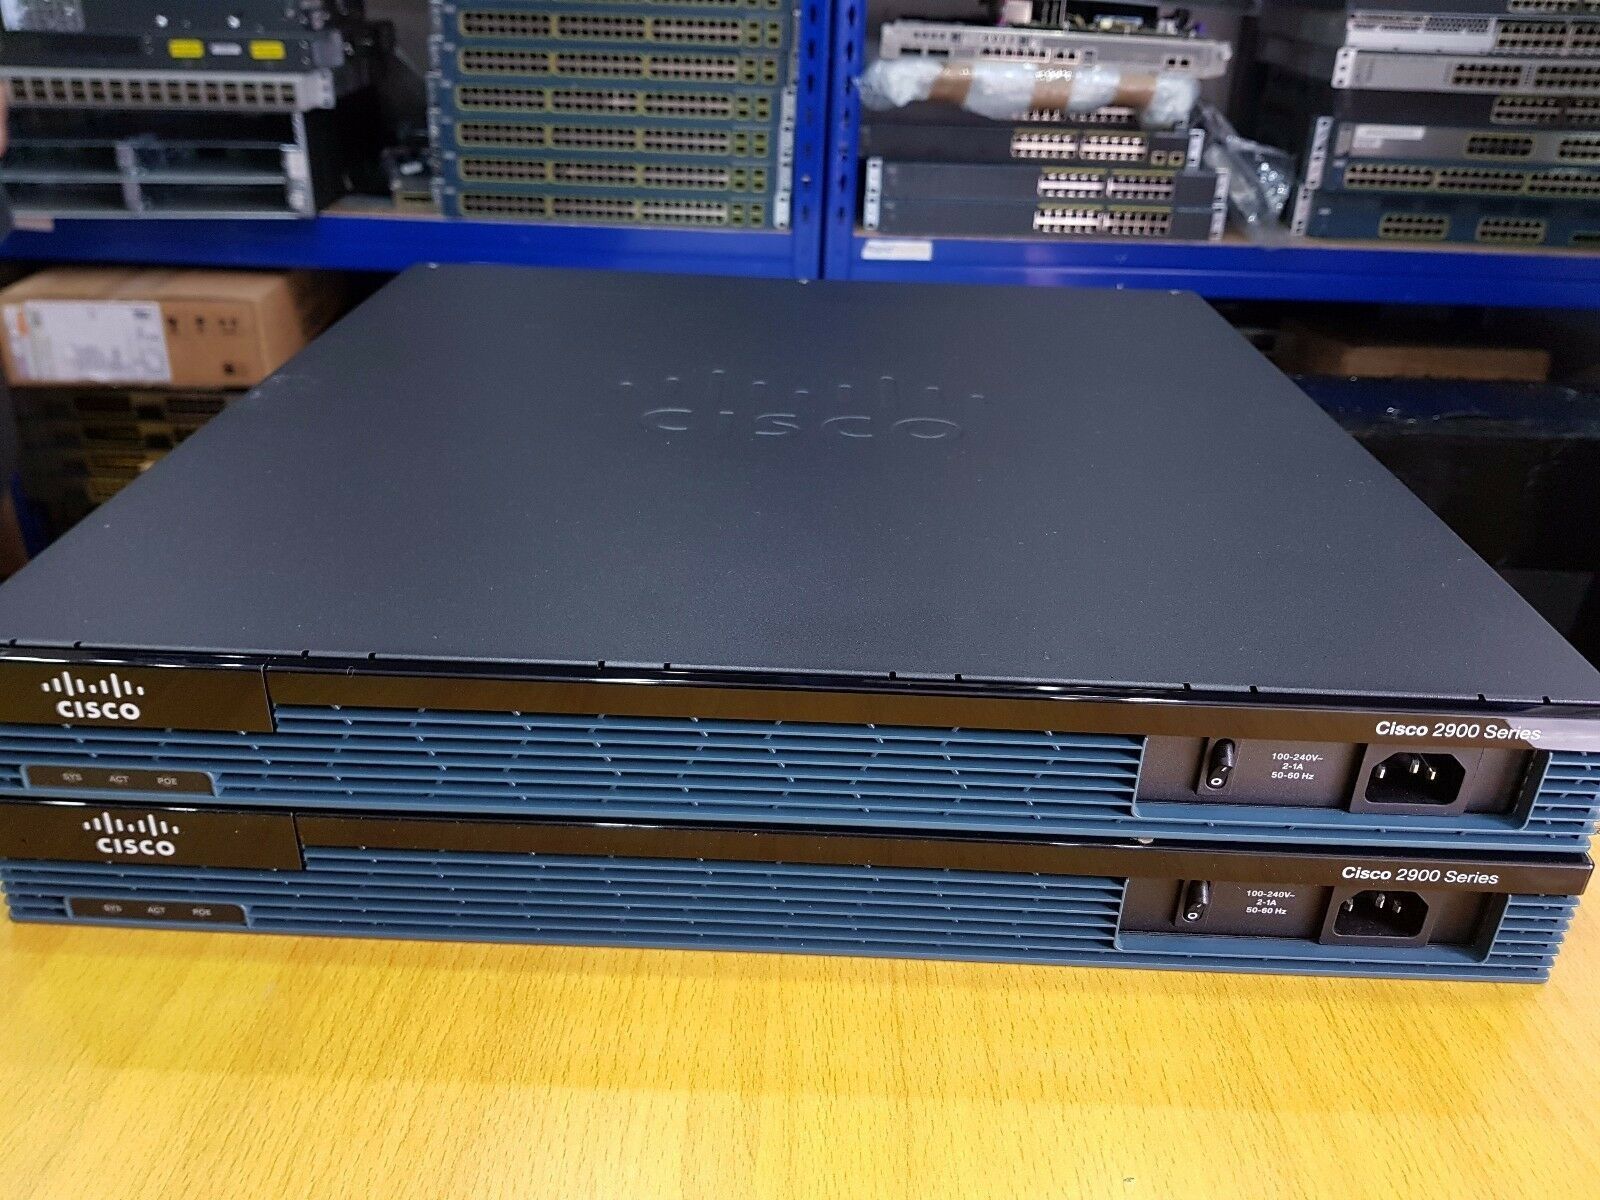 Маршрутизатор Cisco 2901-SEC/K9 5000грн